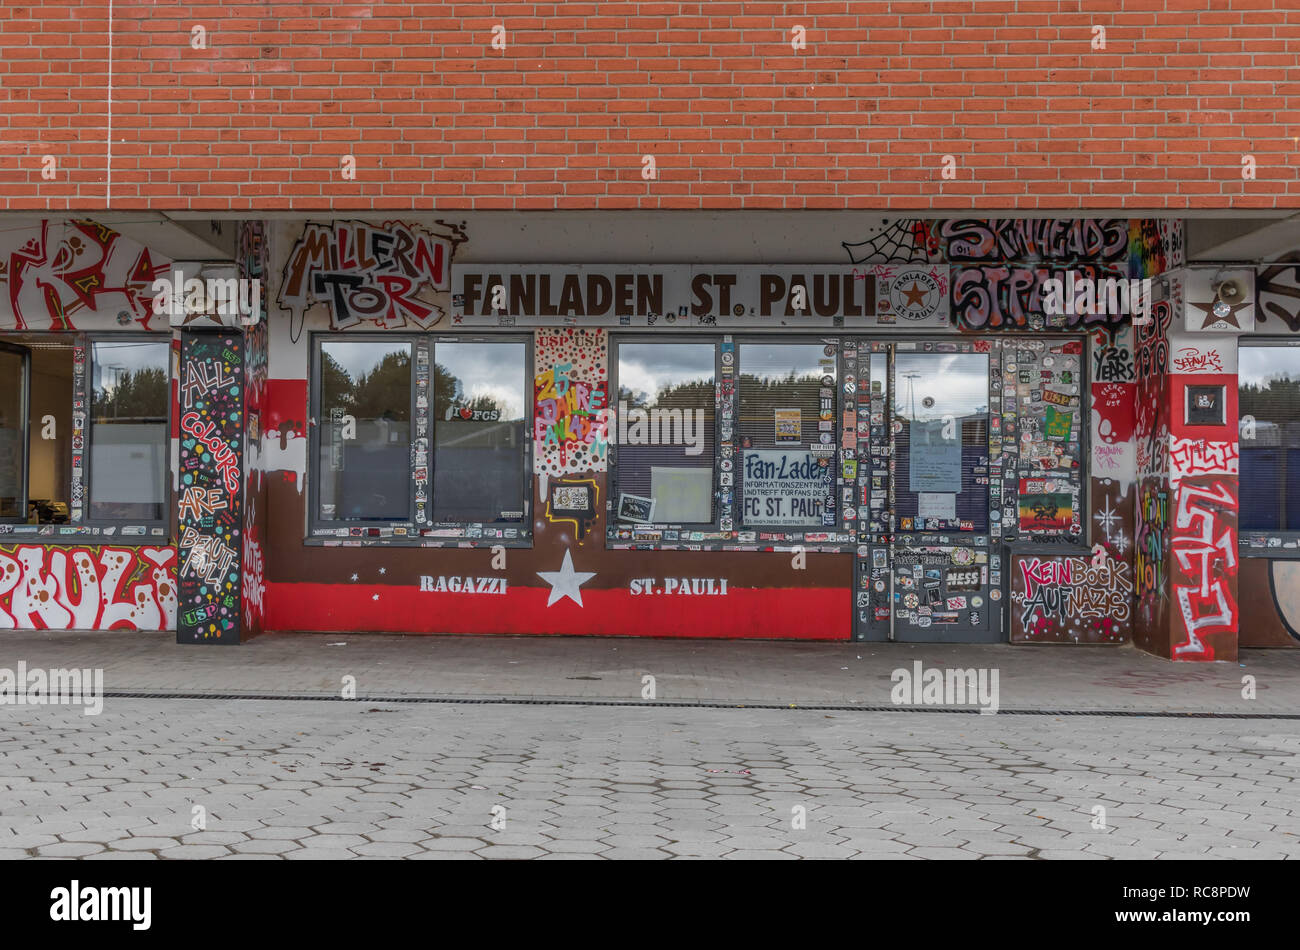 Hamburg, Deutschland - mit ihrer Anhänger mit ihrer Unterstützung des linken Flügels Politik identifiziert, der FC St. Pauli ist ein sehr beliebtes Fußball-Club Stockfoto